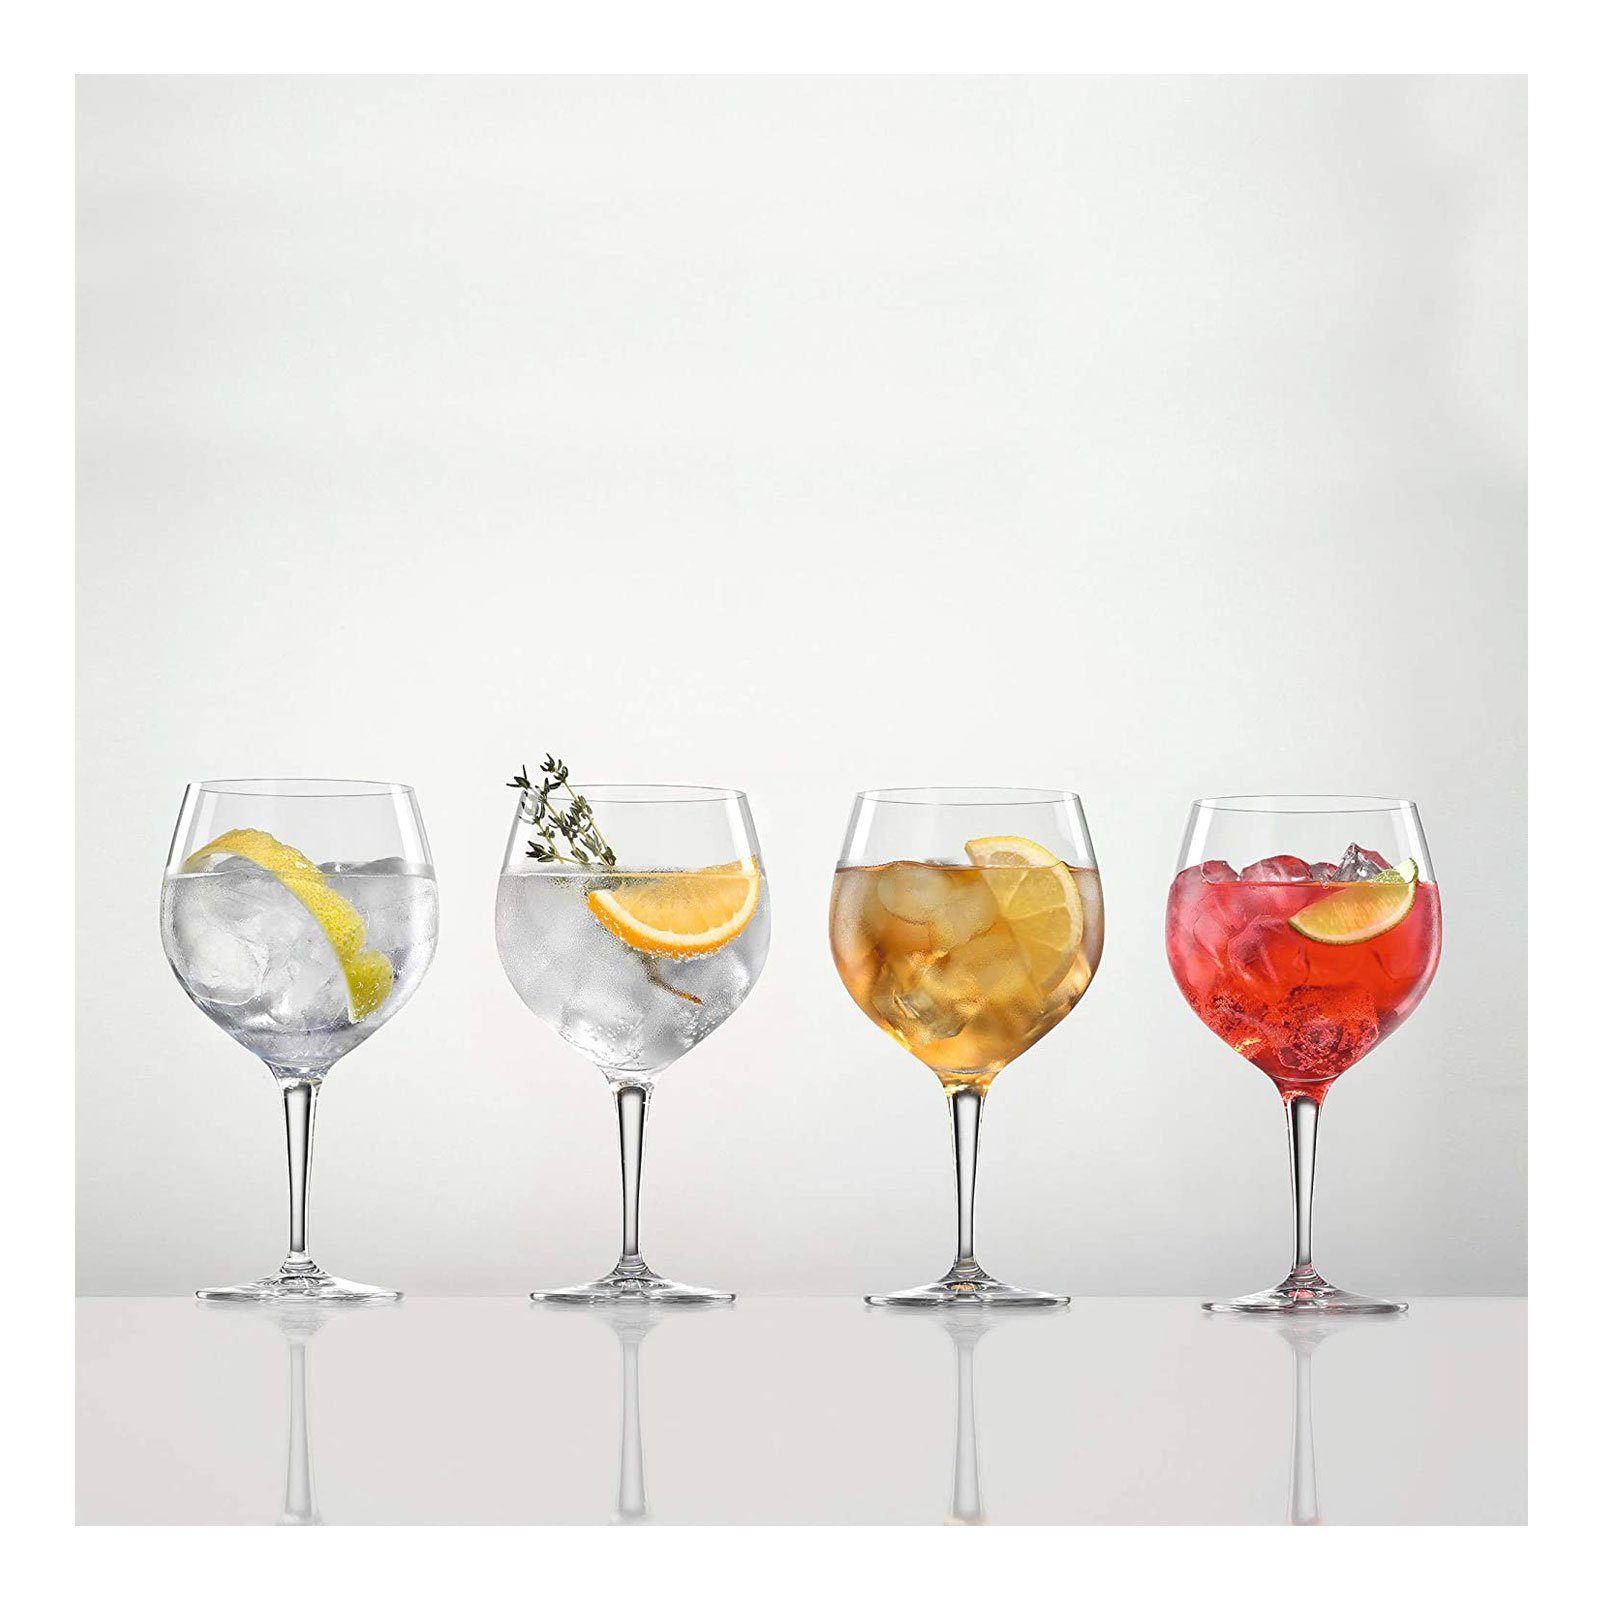 Bruchfestigkeit teilig, Glas Glasses, 4 SPIEGELAU Special Erhöhte